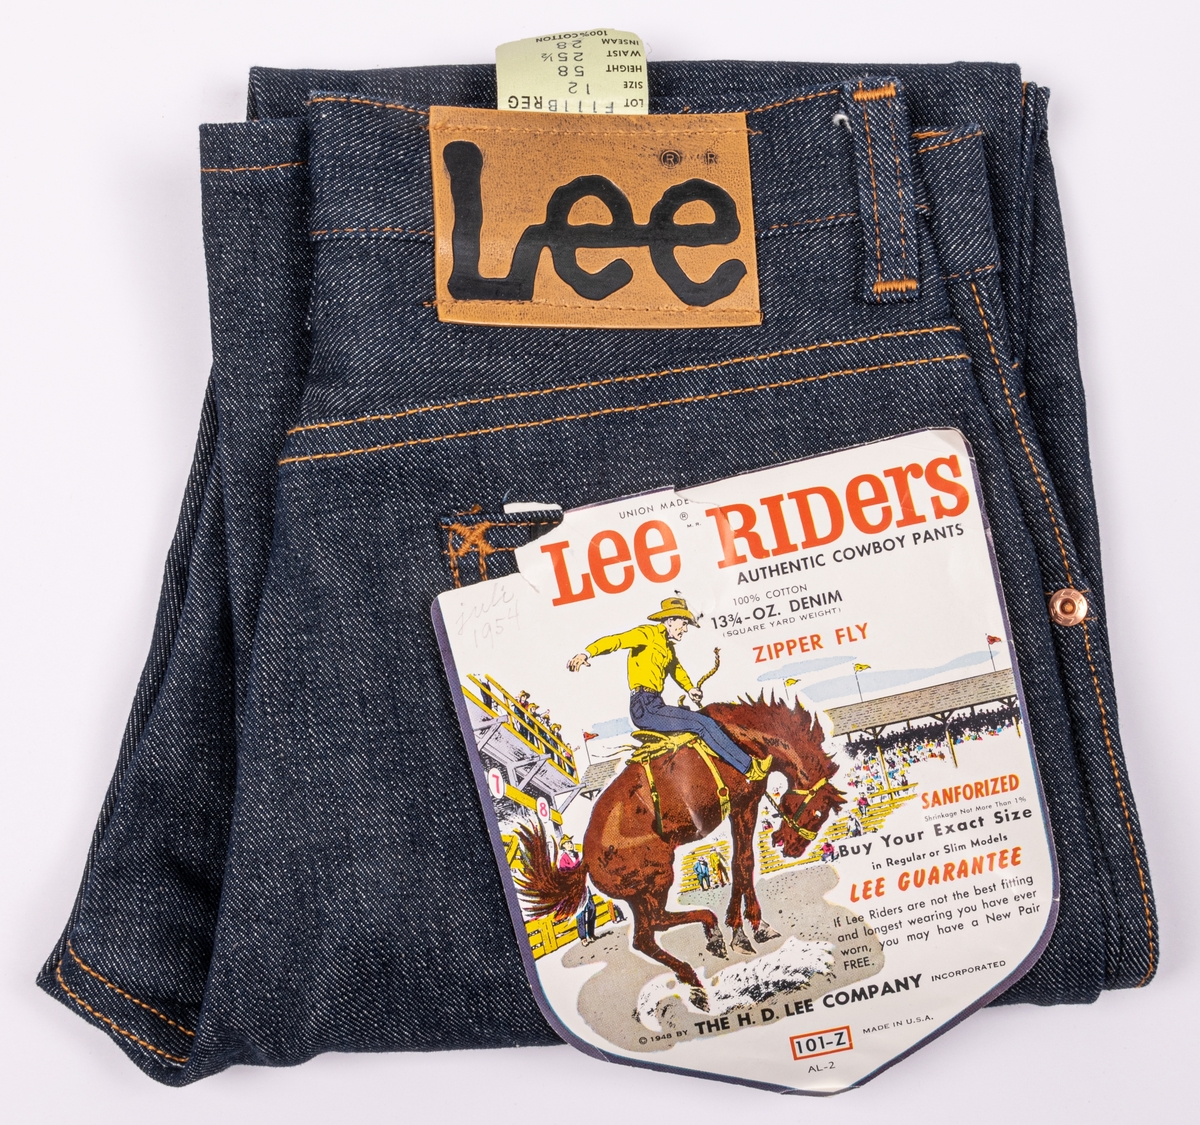 Ett par blå jeans med fällsömmar i benen. Gul-orange tråd. Metallknapp i midjan. Gylf med dragkedja, nitade fickor. Baktill märkt "Lee" på bit av konstläder. Dessutom en pappersetikett på bakfickan med texten: Lee Riders. Barnstorlek. "Authentic cowboy pants".